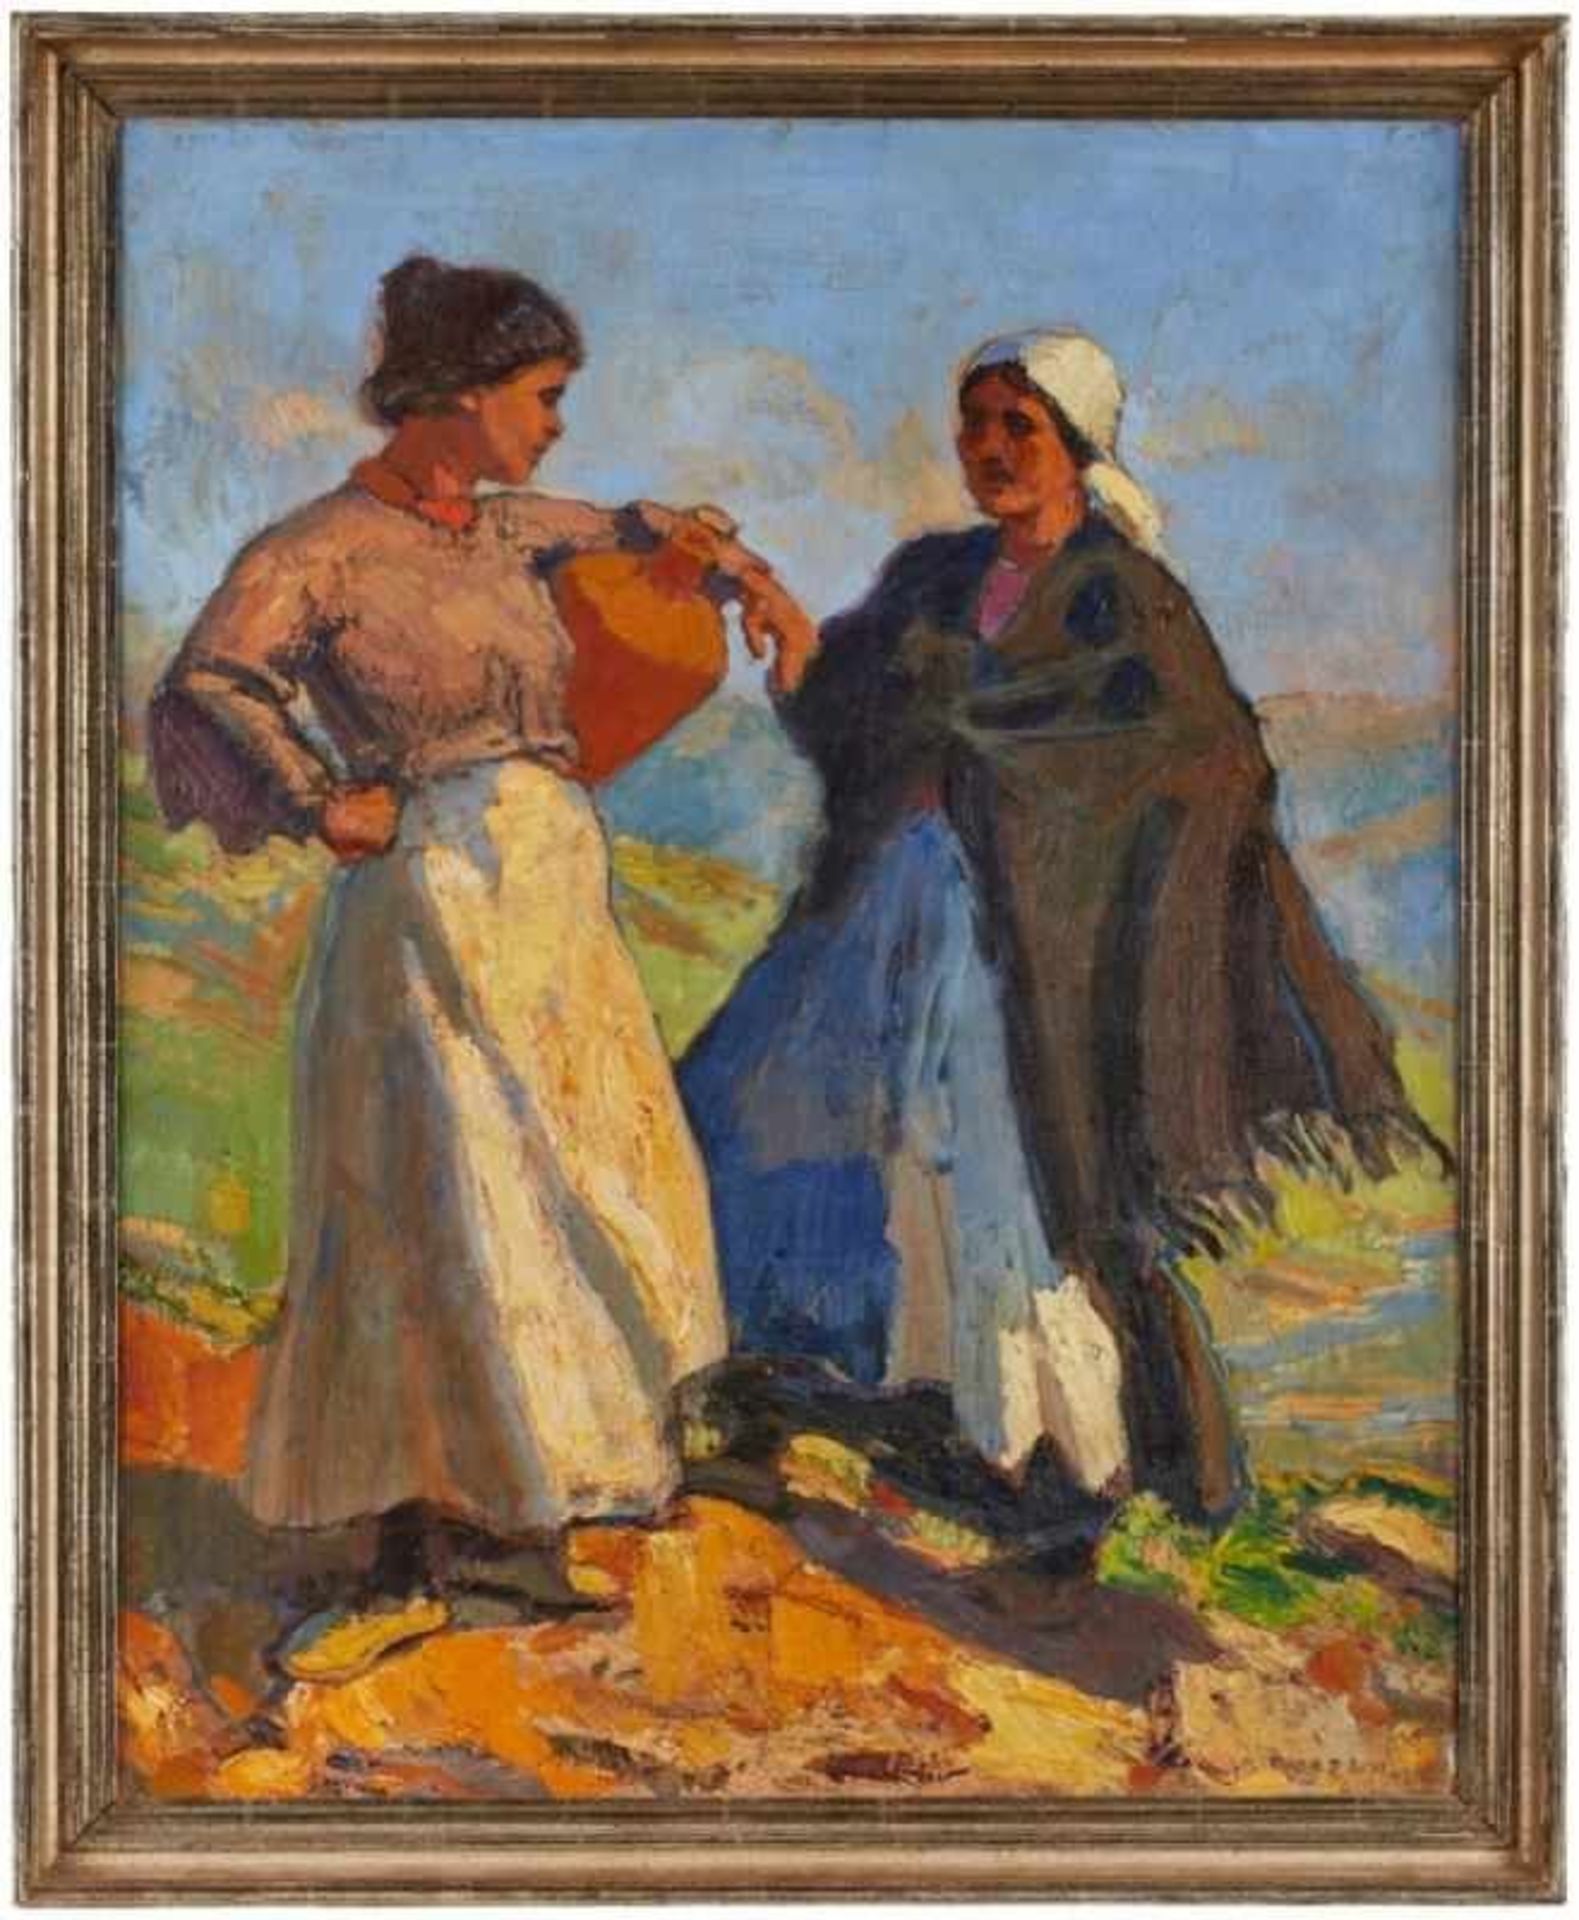 Gemälde Rudolf Gudden 1865 Werneck - 1935 München "Andalusische Mädchen" u. re. sign. Gudden Verso - Bild 3 aus 3